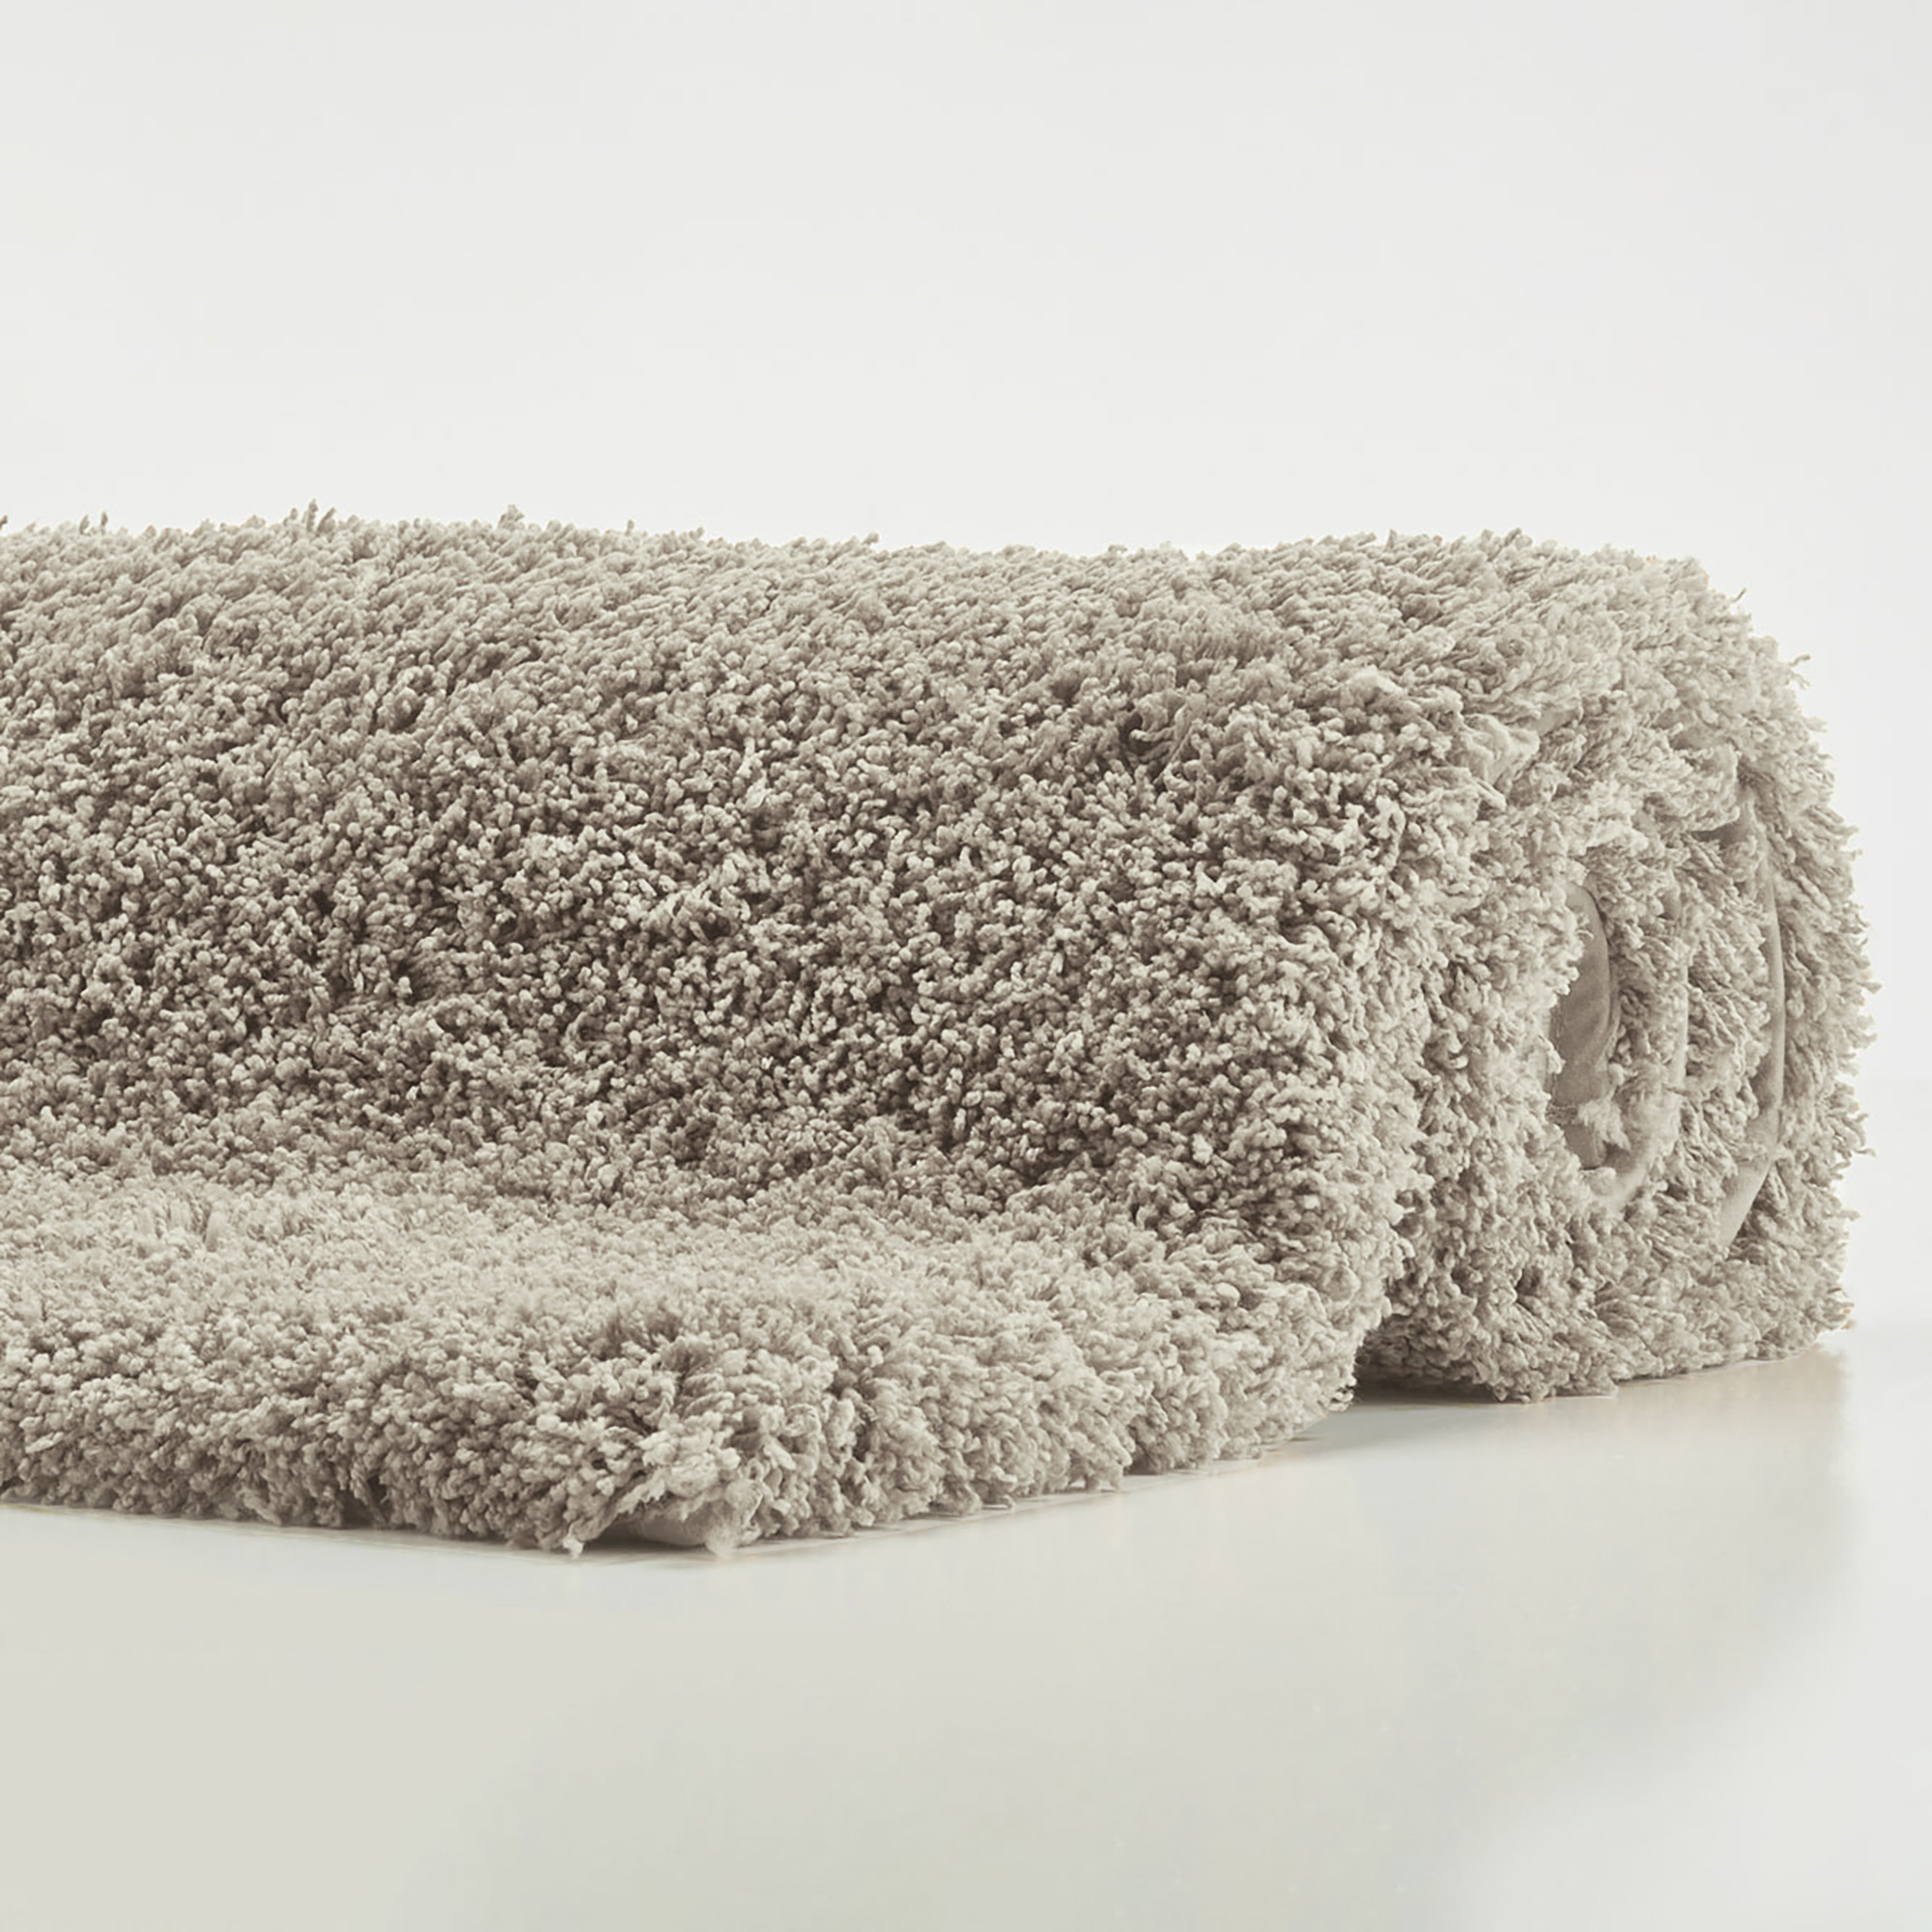 Tappetino da bagno rotondo MUSA colore Linen-16 (beige) - diametro 80 cm -  Bath & Living